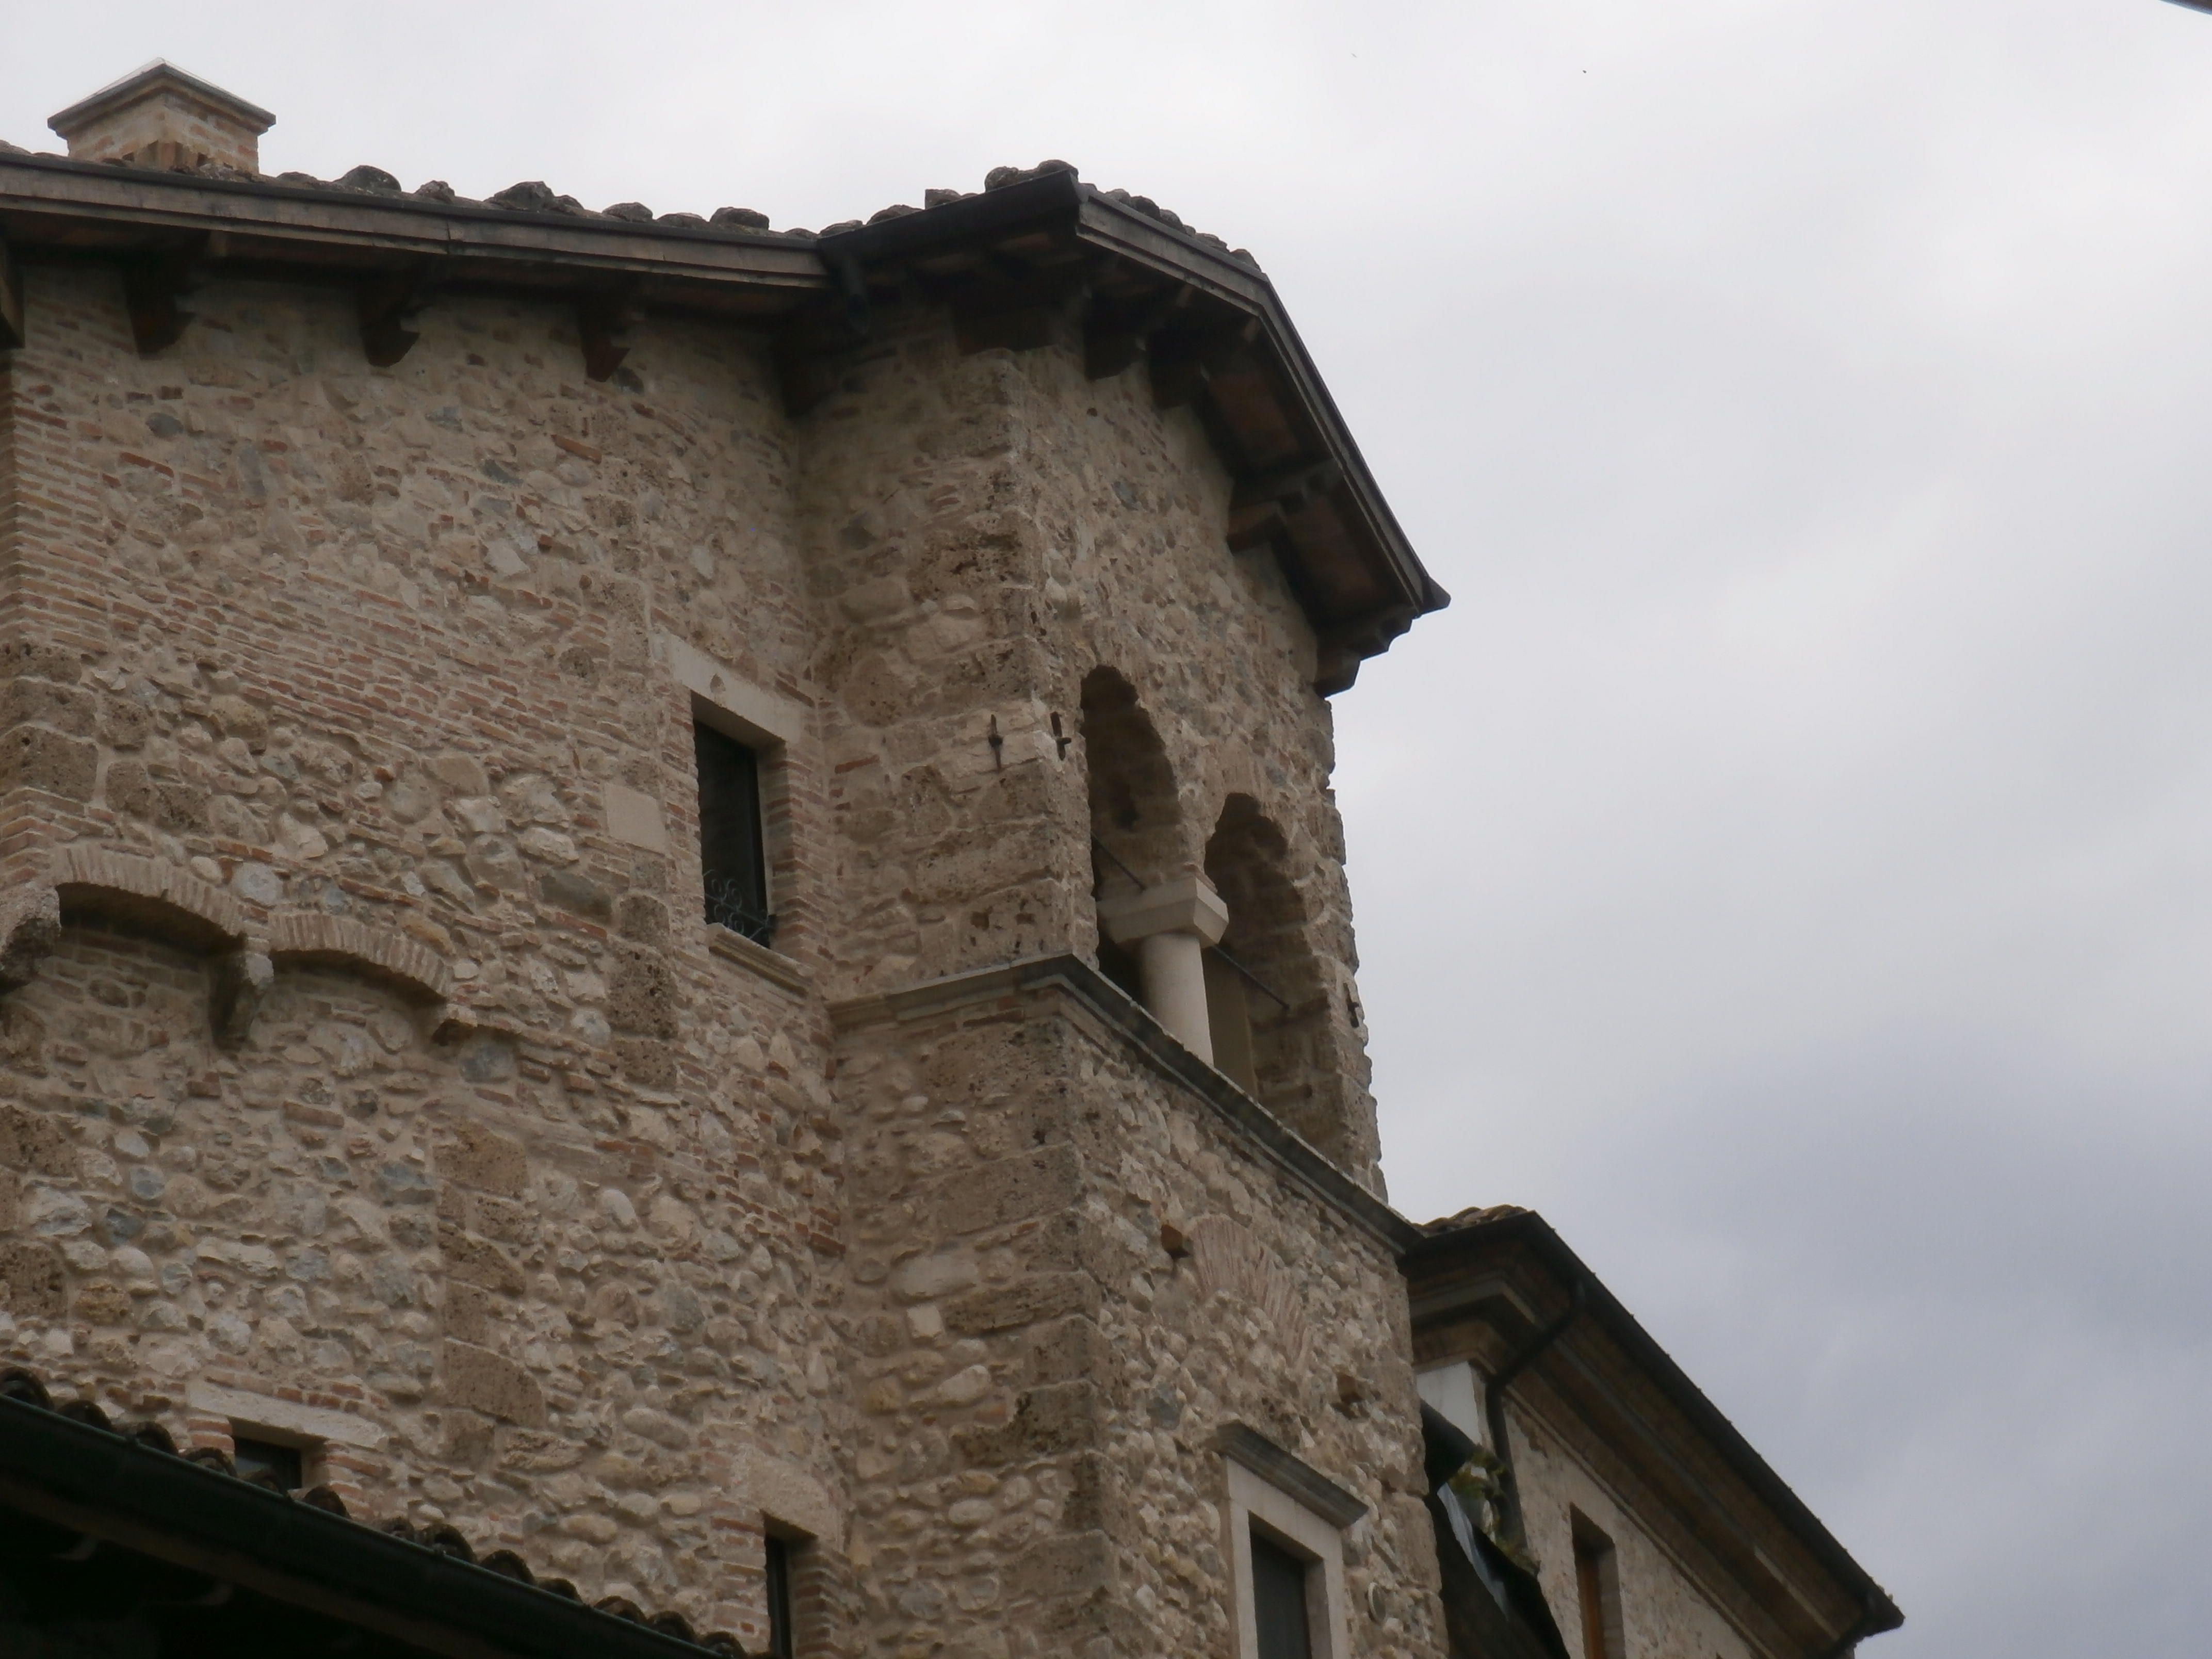 Palazzo in Piazza Mazzoni (casa, a torre) - Isola del Gran Sasso d'Italia (TE)  (XI)